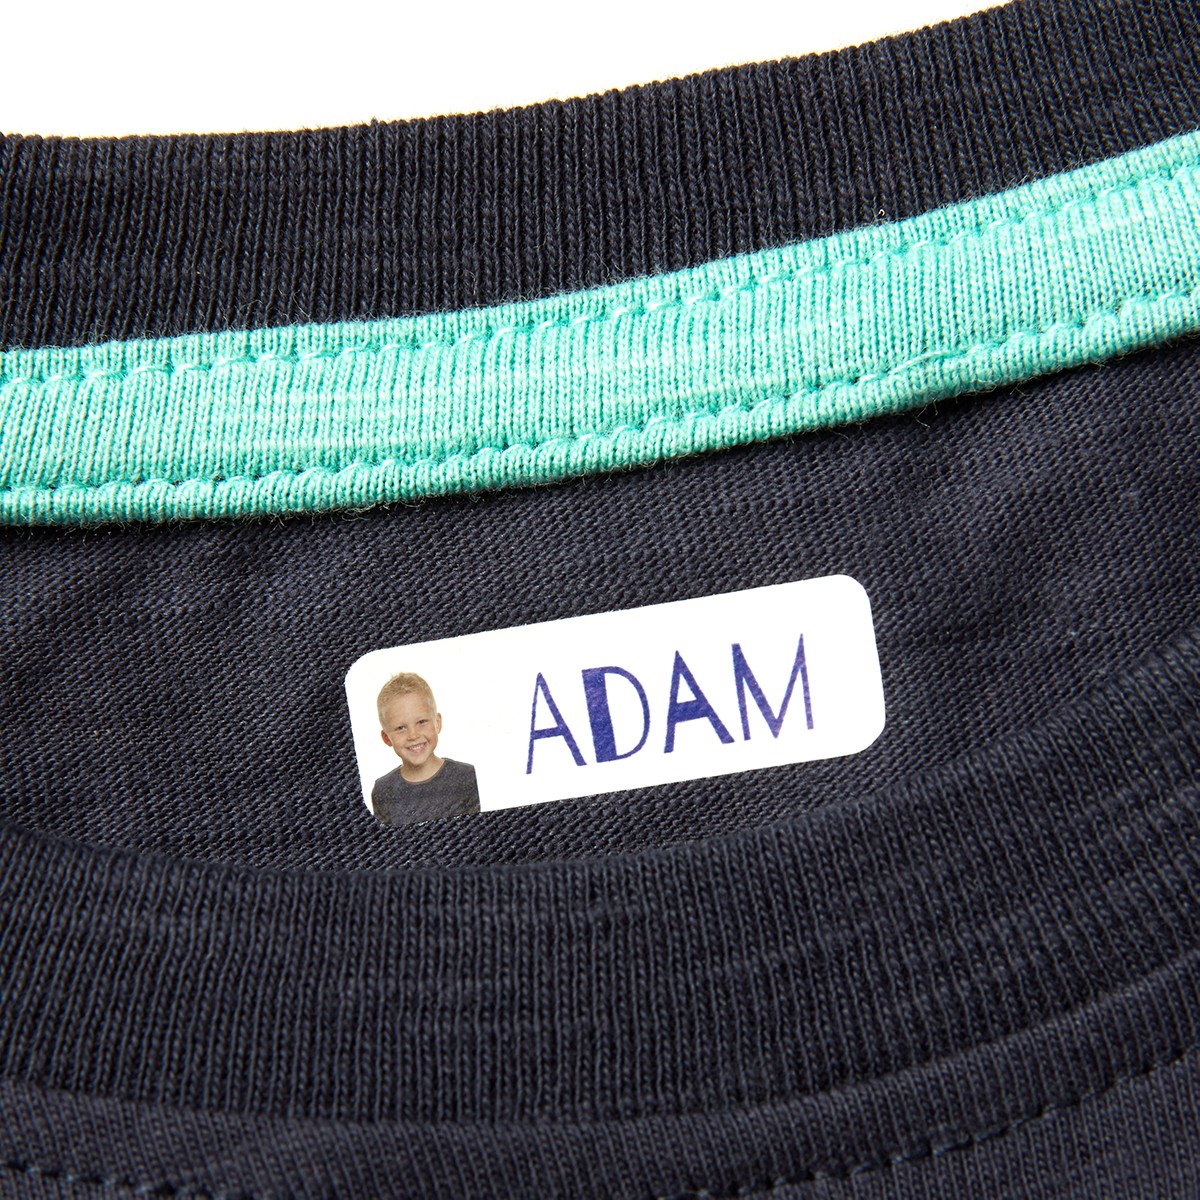 Marca la ropa con nuestras etiquetas personalizadas termoadhesivas